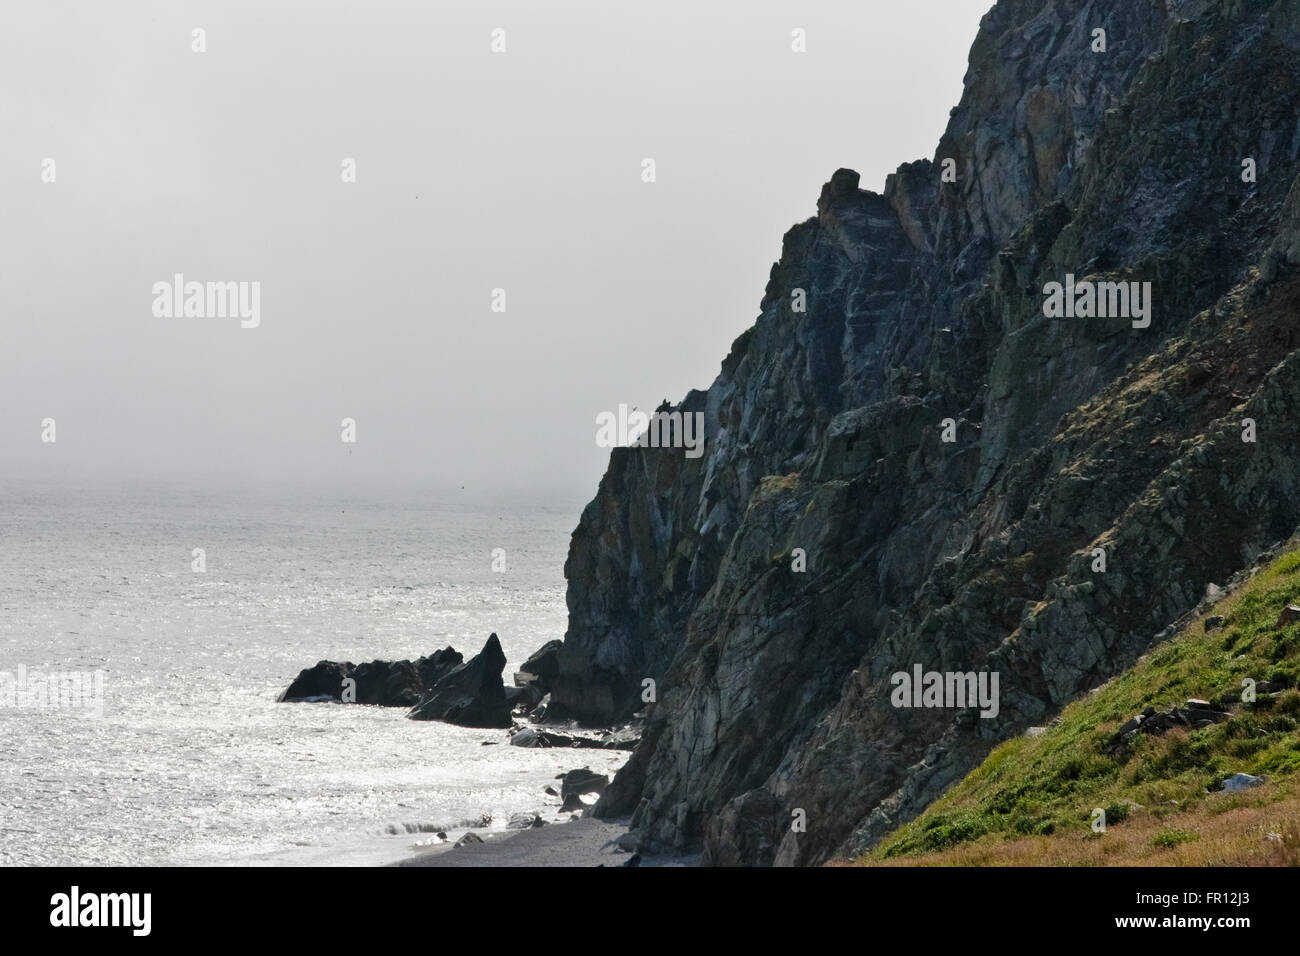 Insel, Kap Dezhnev, östlichste Ecke von Eurasia, russischen Fernen Osten Stockfoto